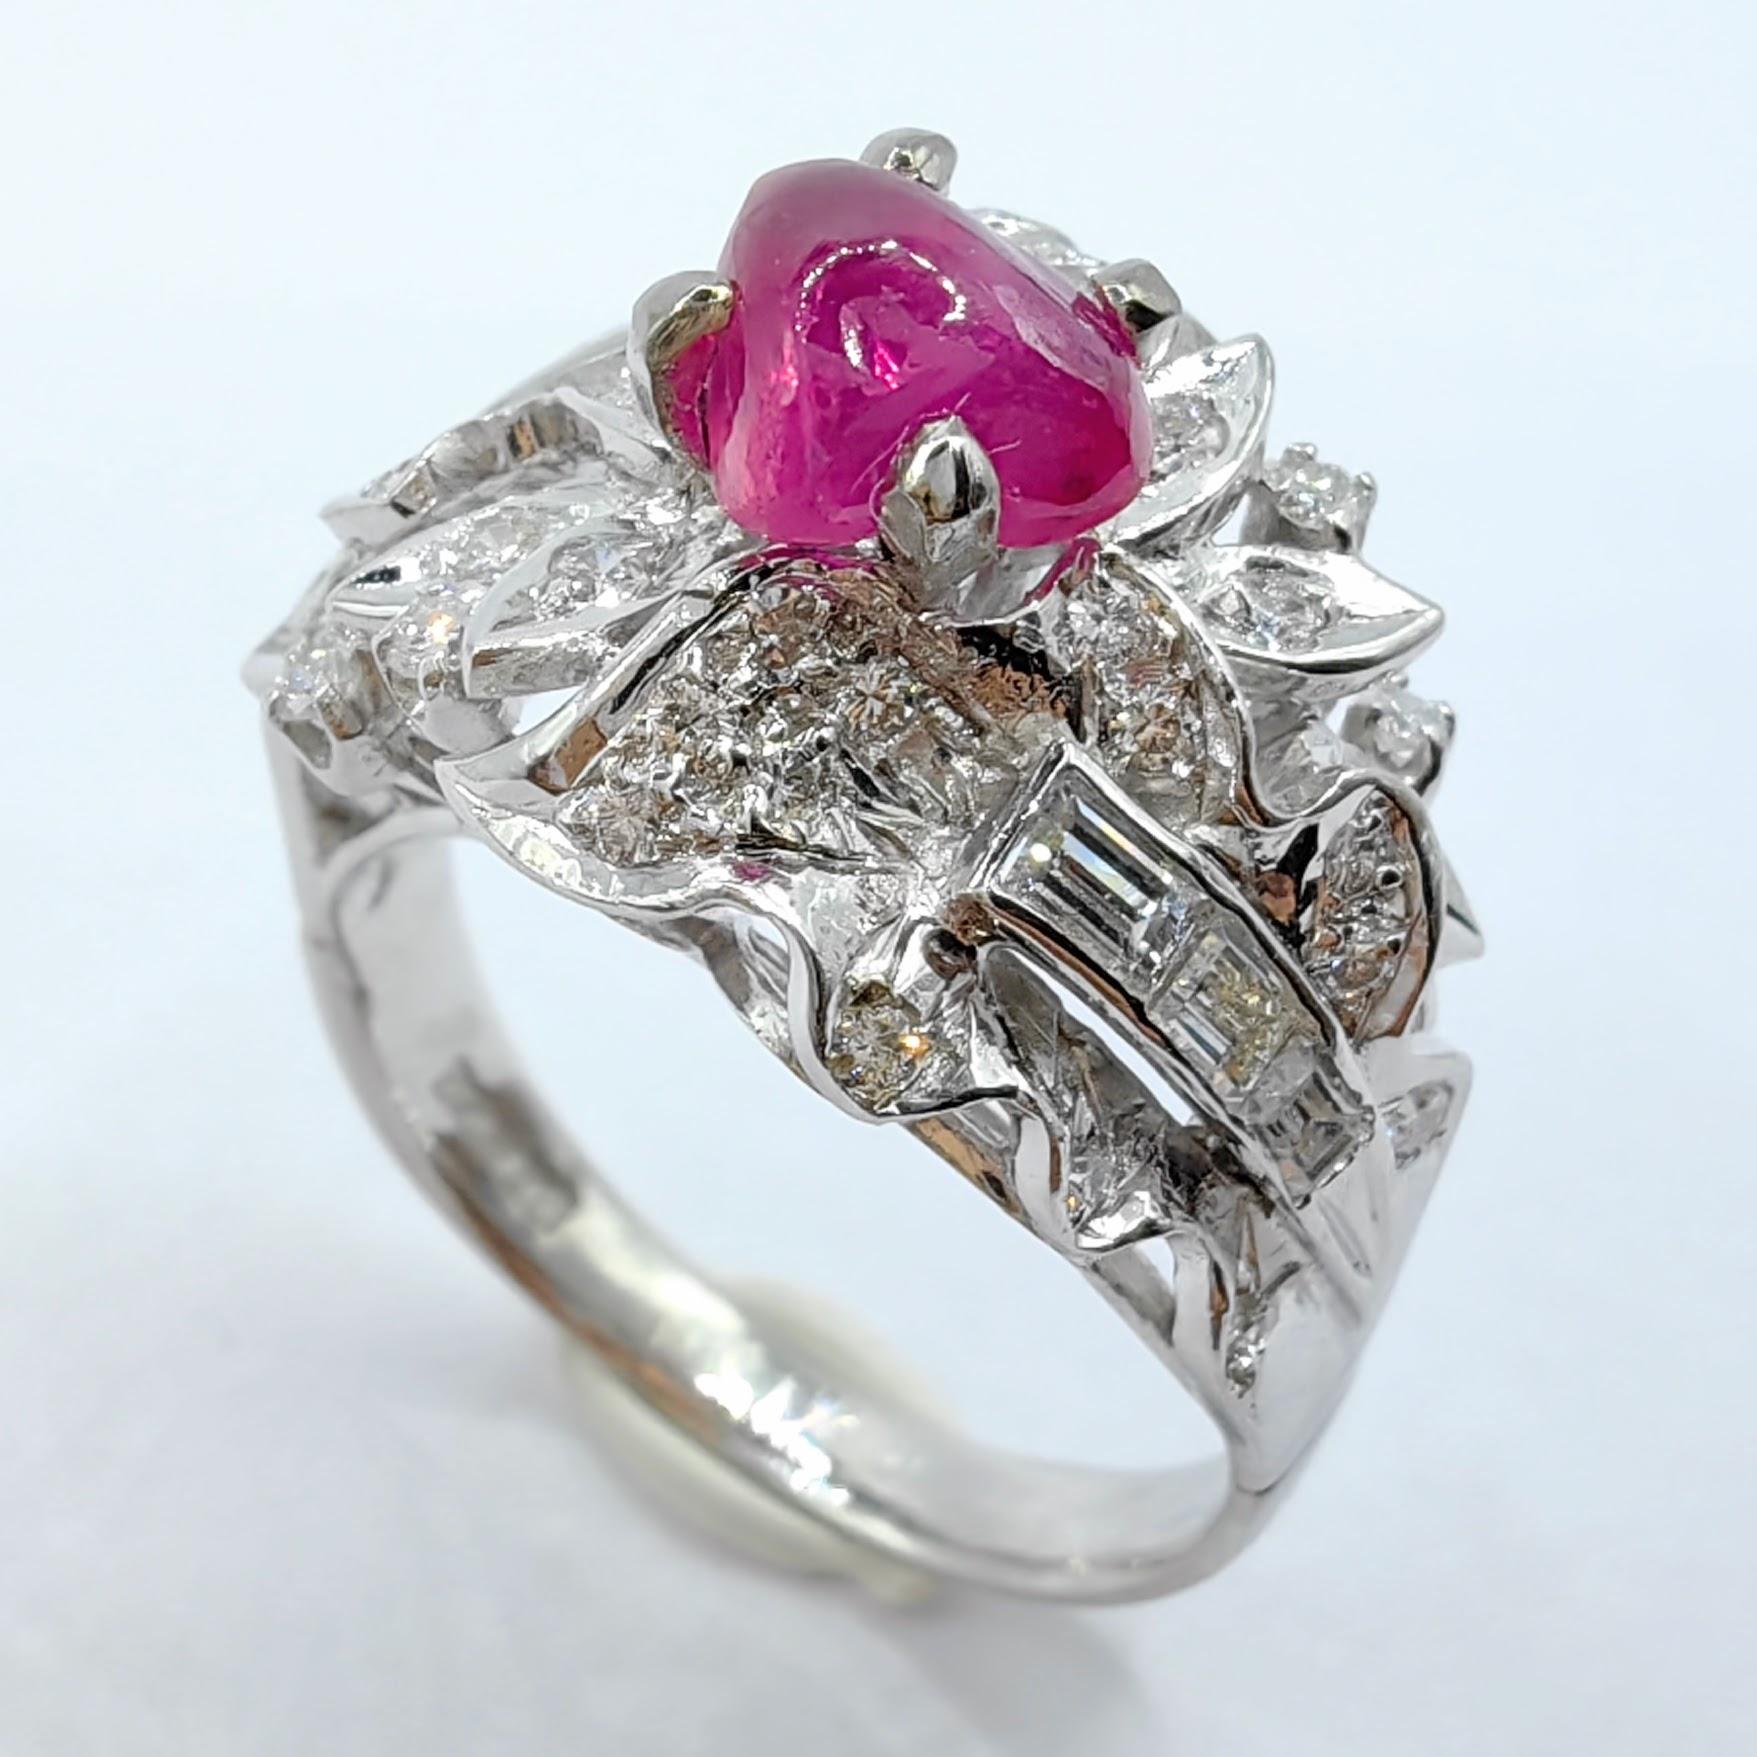 Wir präsentieren unseren einzigartigen Vintage 1,52ct Freeform Ruby Edwardian Diamond Ring in Platin, ein fesselndes Stück, das Vintage-Charme und außergewöhnliche Handwerkskunst auf wunderbare Weise miteinander verbindet. In der Mitte dieses